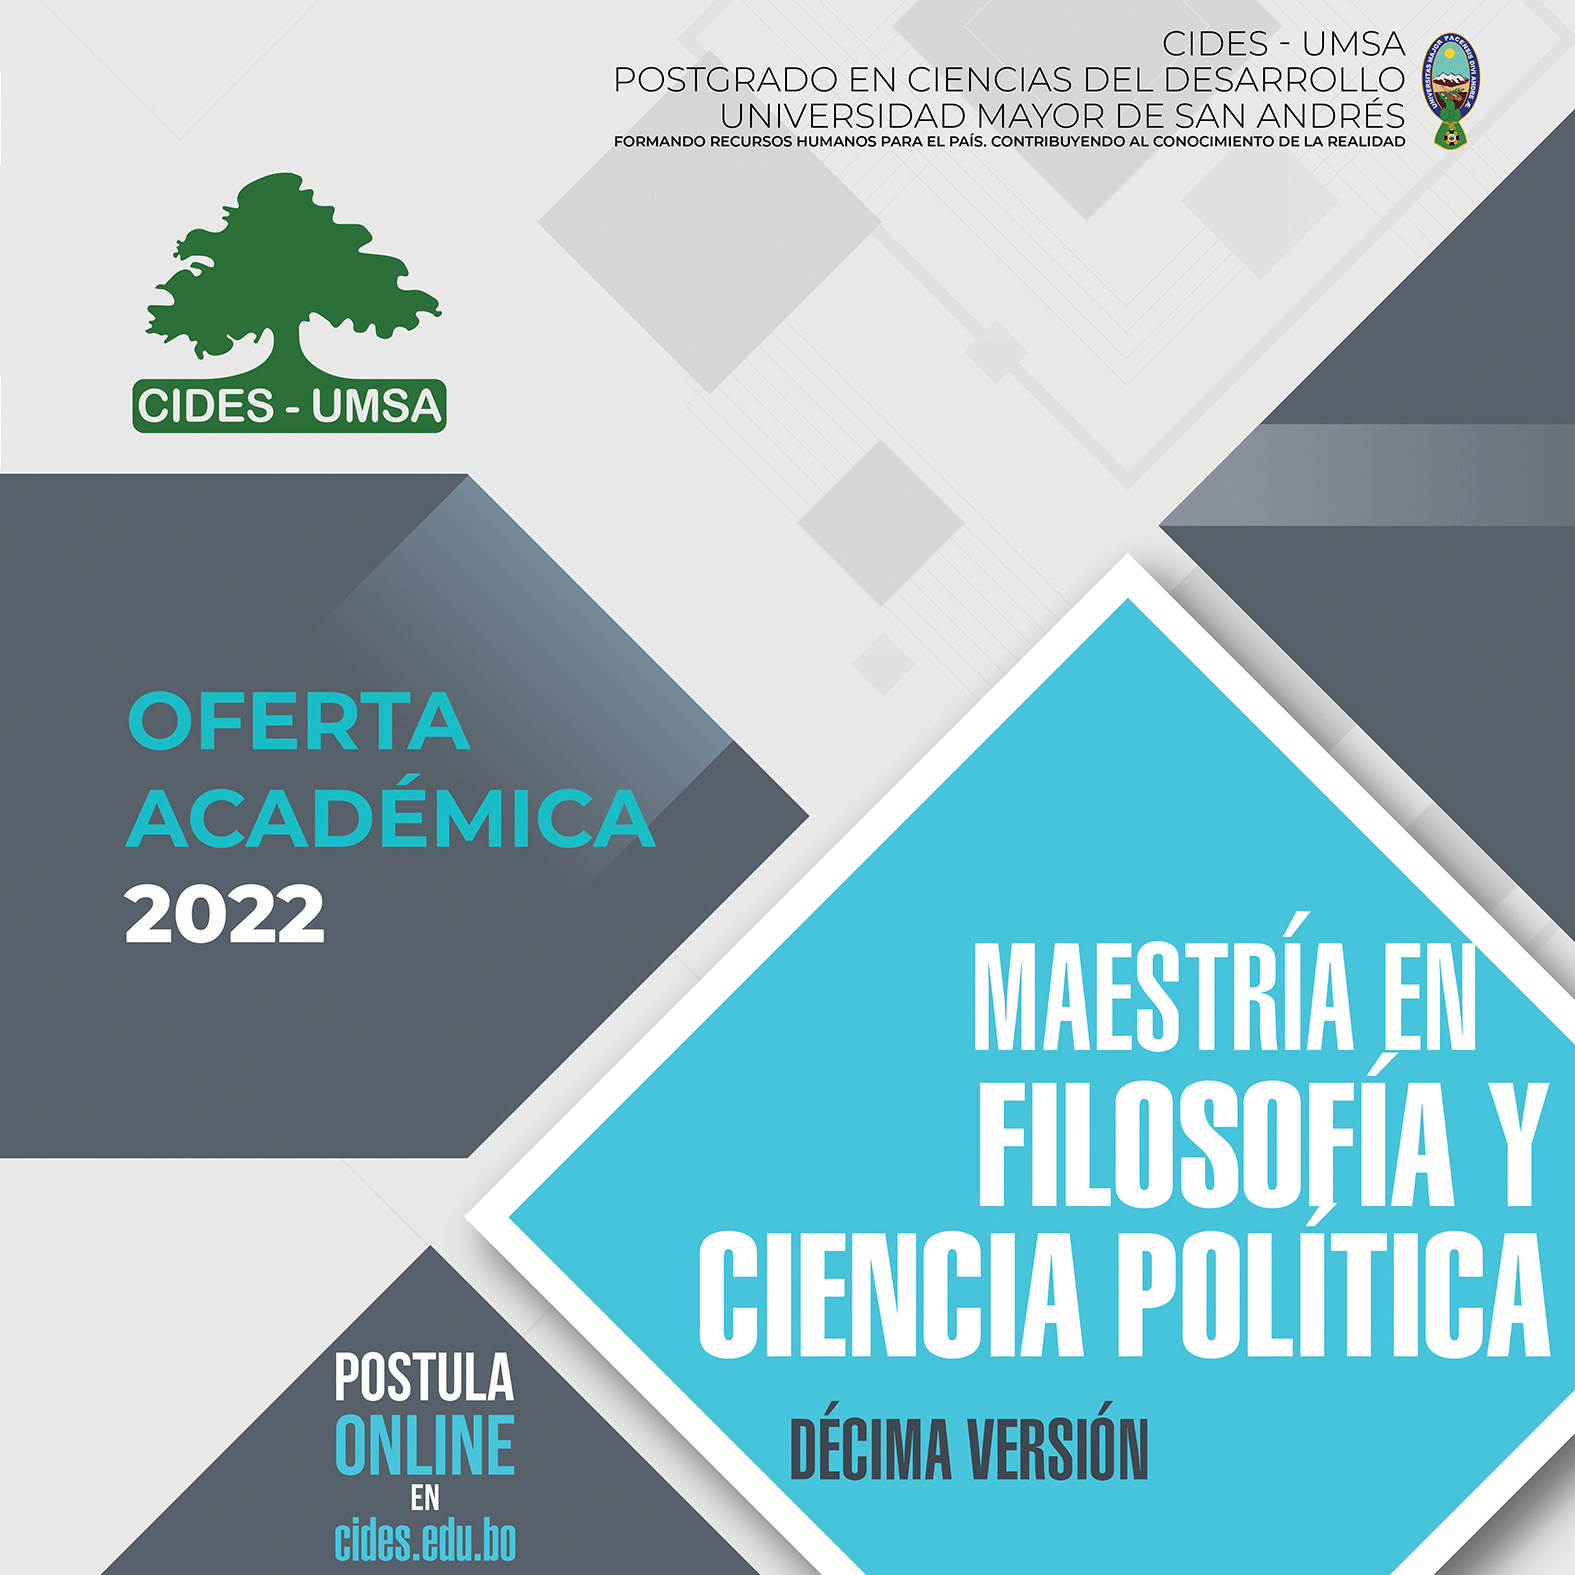 MAESTRÍA EN FILOSOFÍA Y CIENCIA POLÍTICA - OFERTA ACADÉMICA 2022